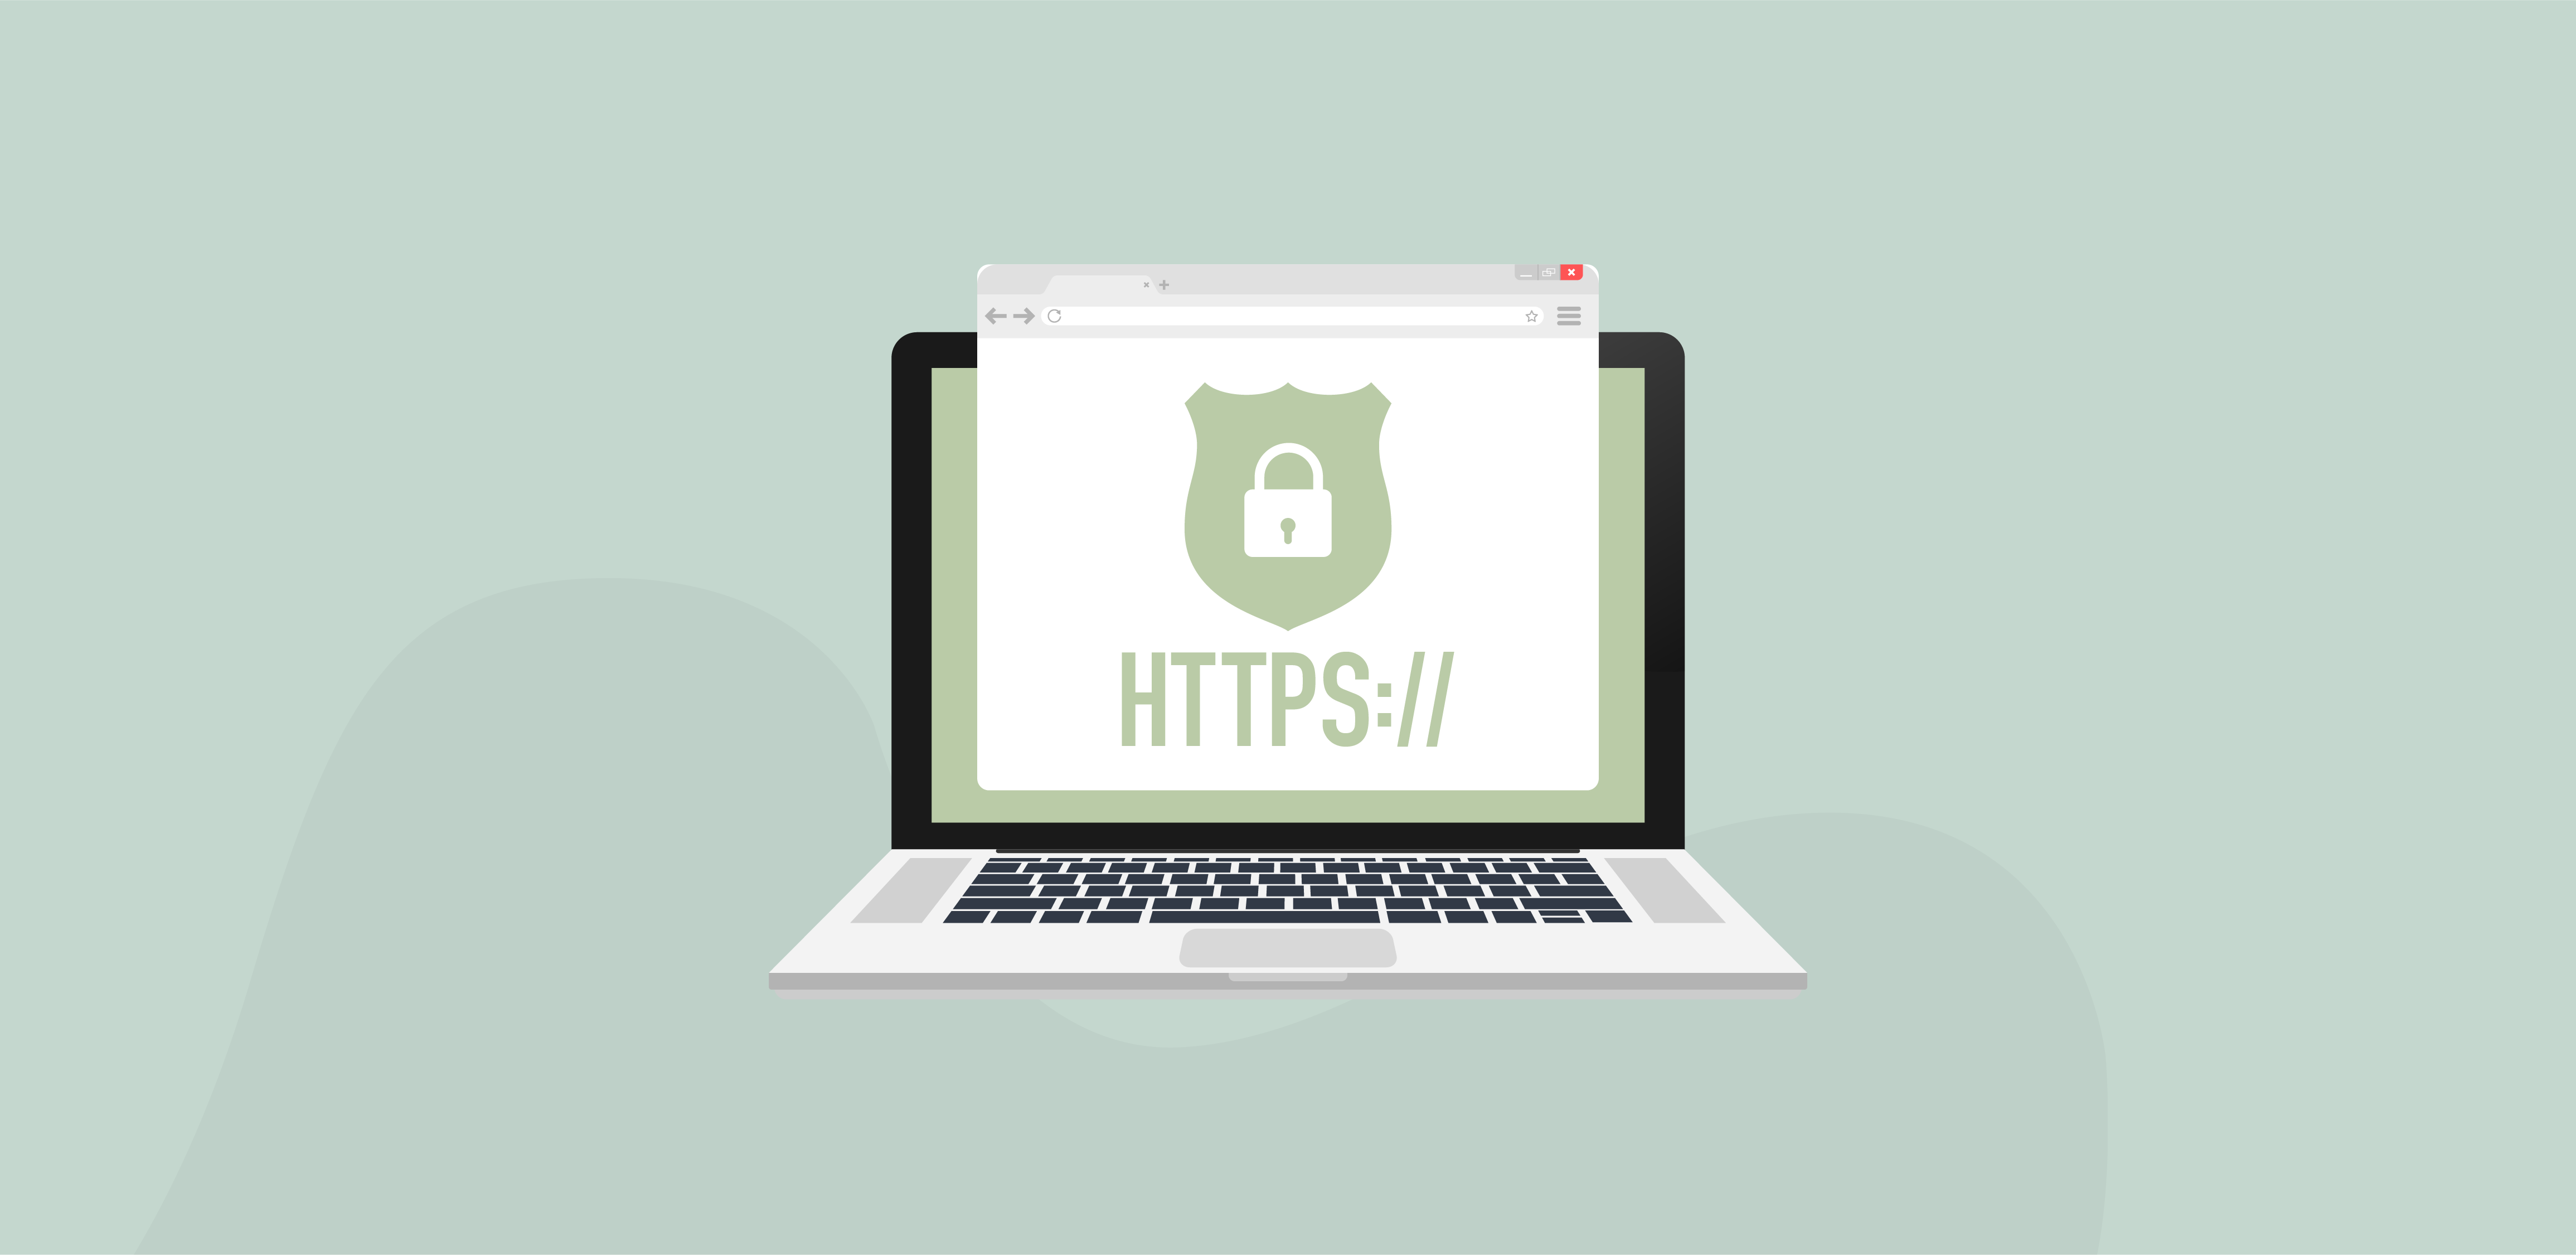 DD_Køb et SSL Certifikat og øg sikkerheden-67